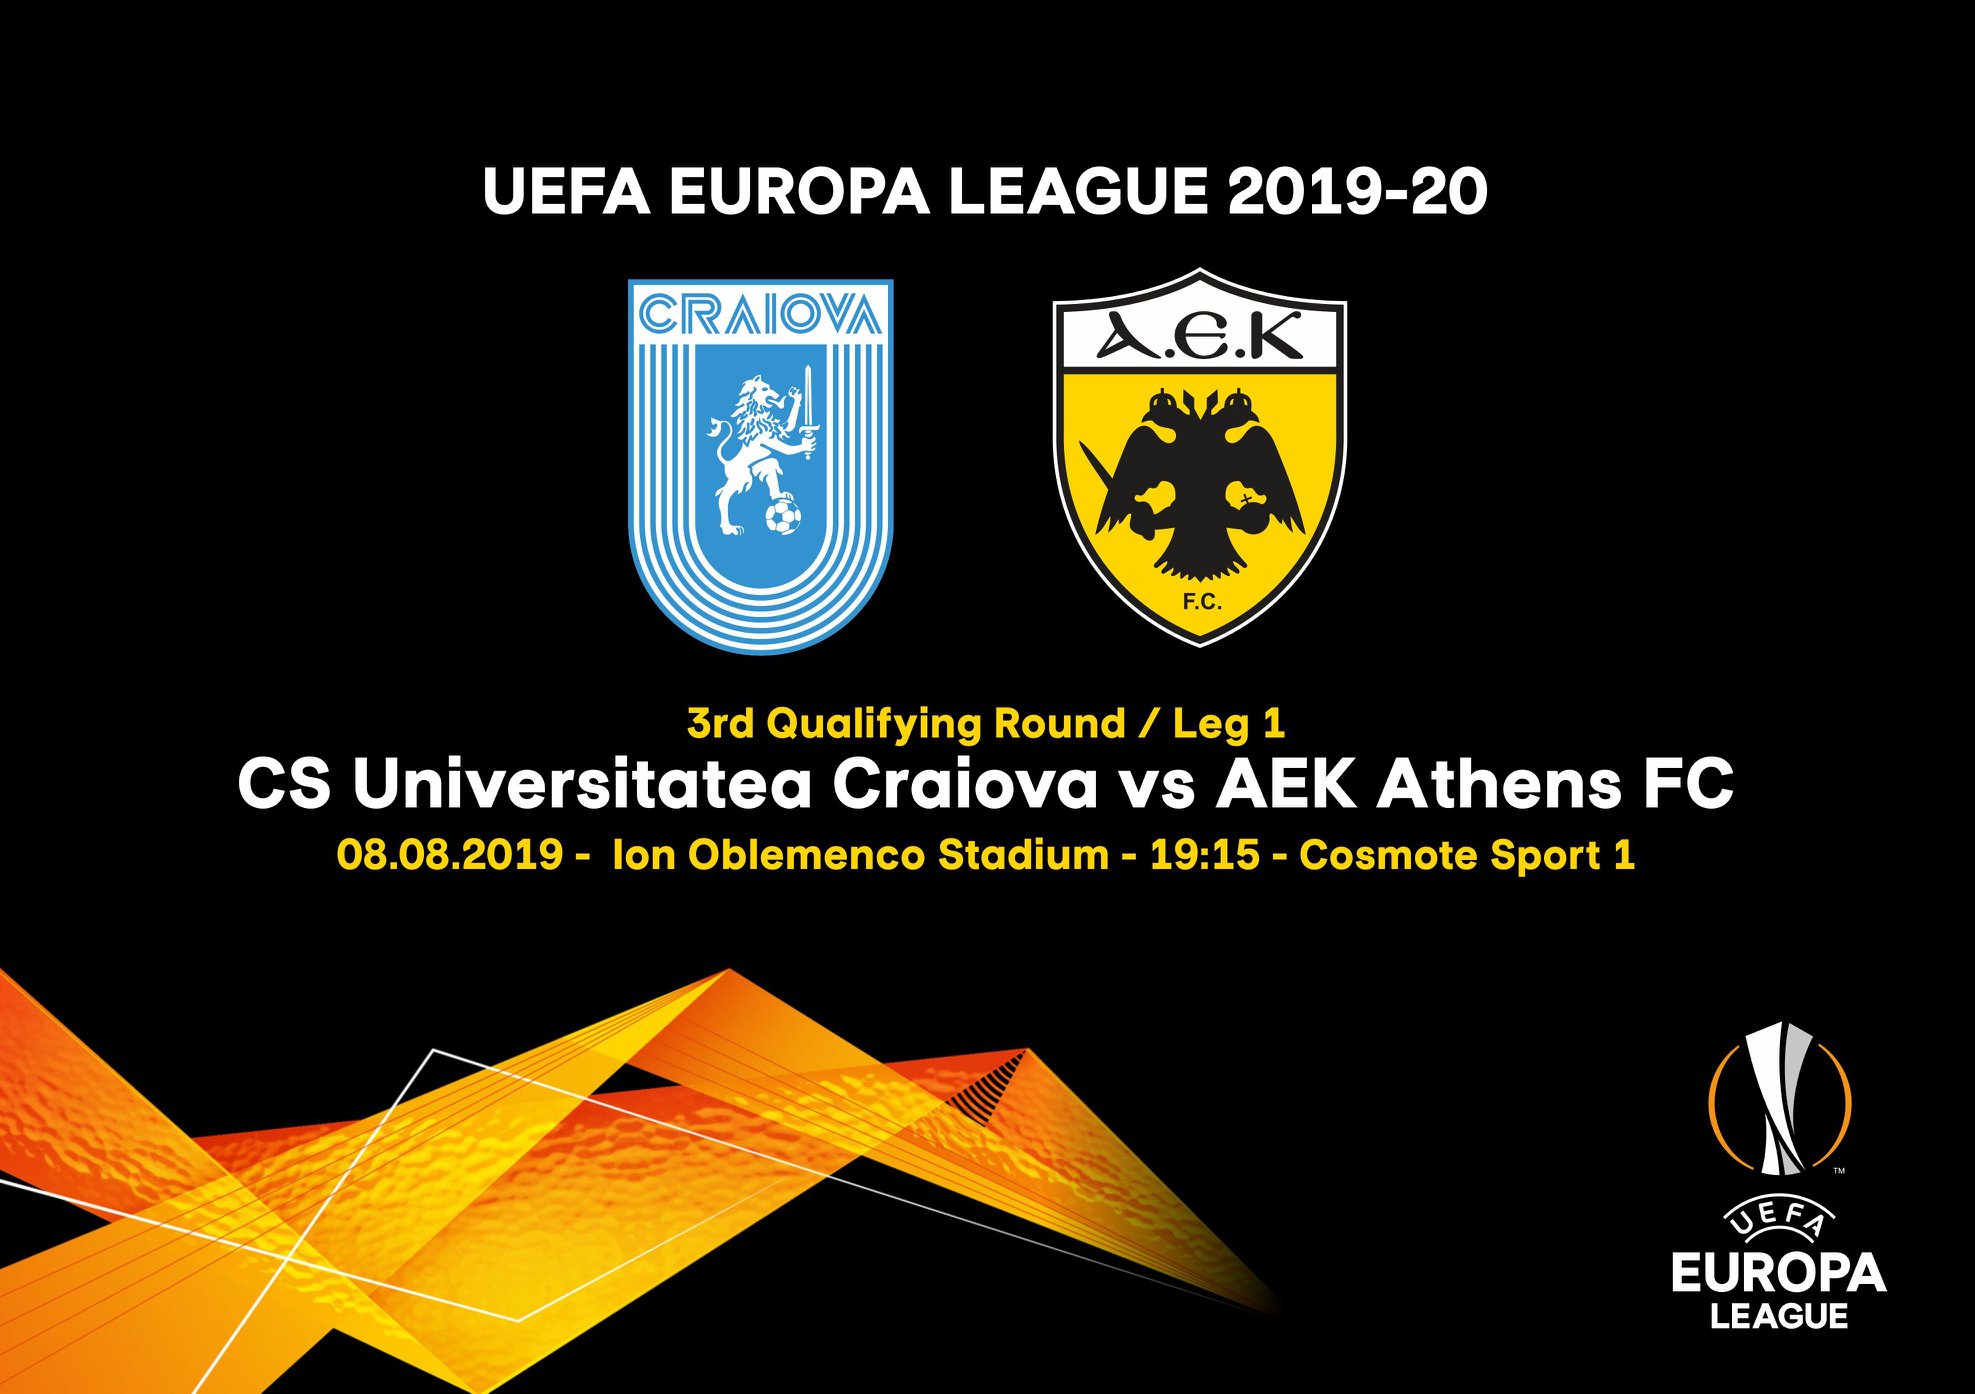 AEK - Europa League 2019/20 - Σελίδα 10 από 12 - AEK1924.gr